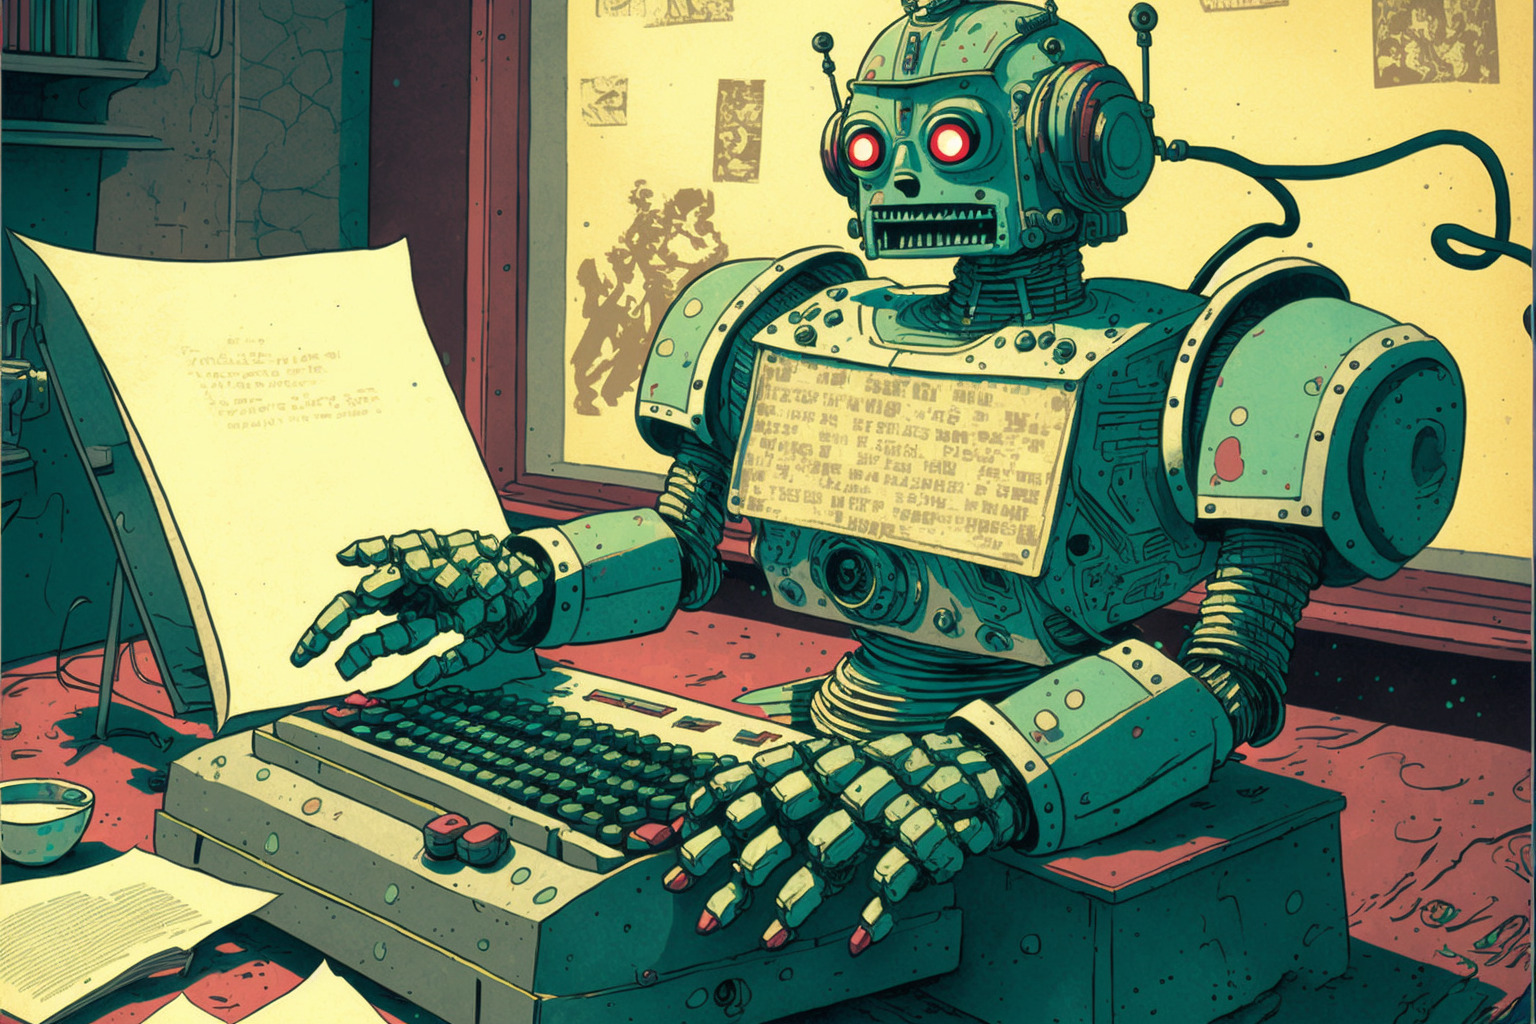 Robot using a typewriter